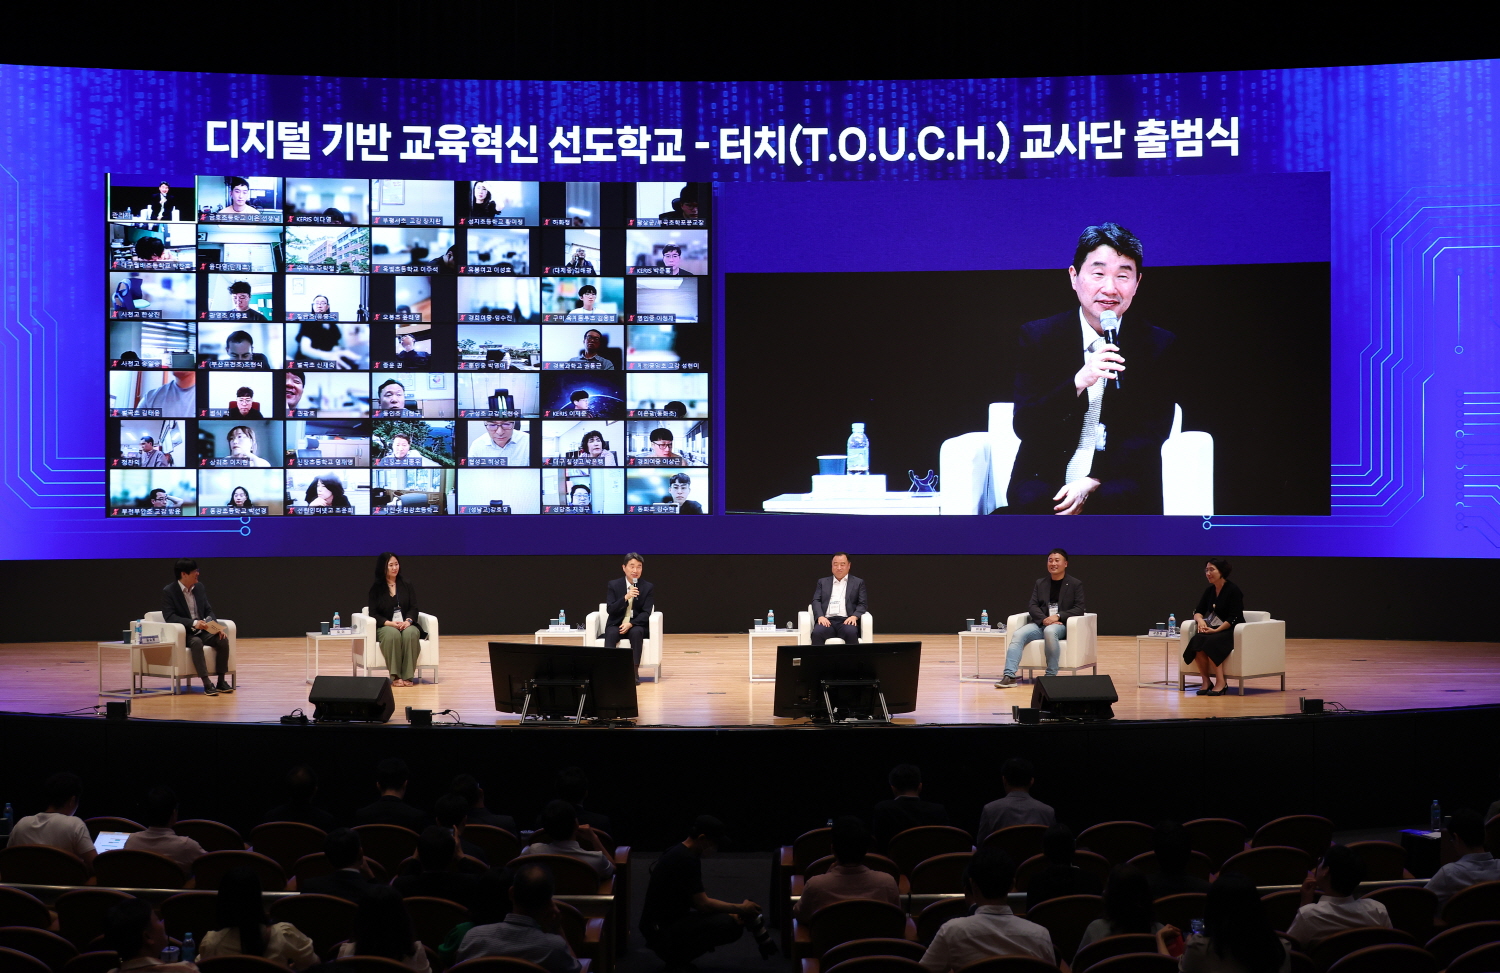 교육부는 17개 시·도교육청, 한국교육학술정보원과 함께 8월 25일(금) 서울 코엑스에서 디지털 기반 교육혁신 선도학교-터치(T.O.U.C.H.) 교사단 출범식을 개최했다.